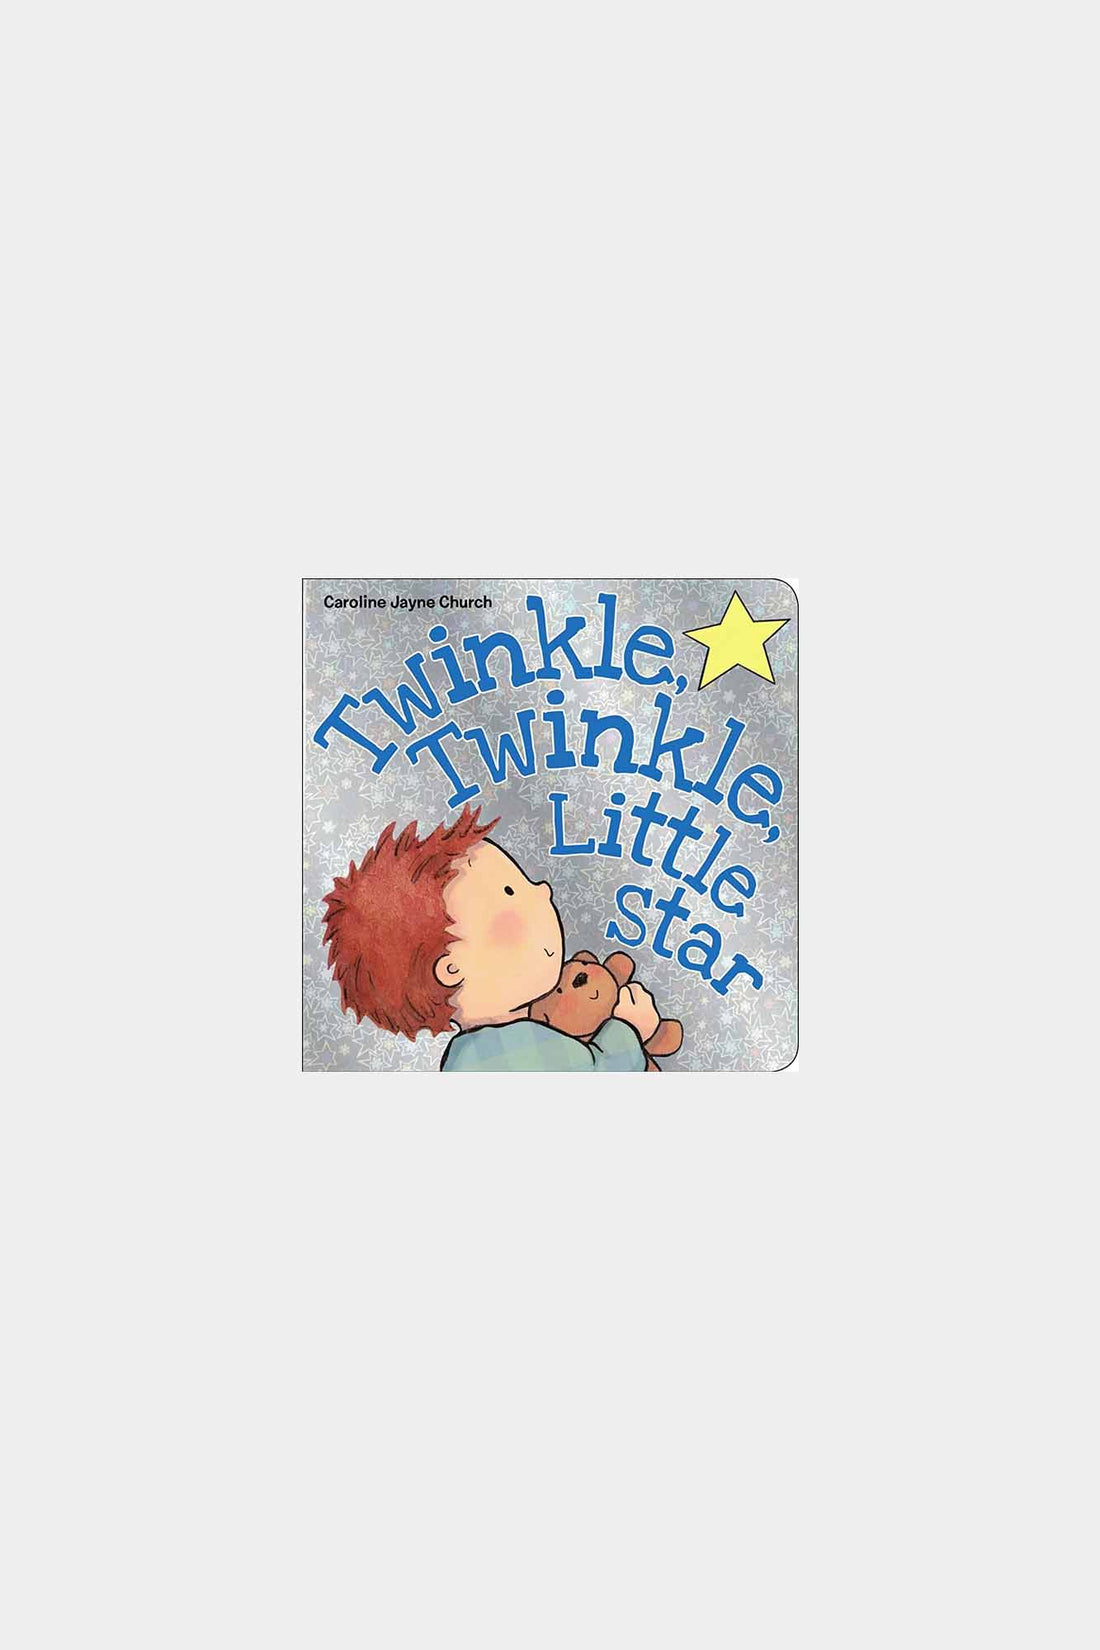 Twinkle, Twinkle, Little Star - Board Book